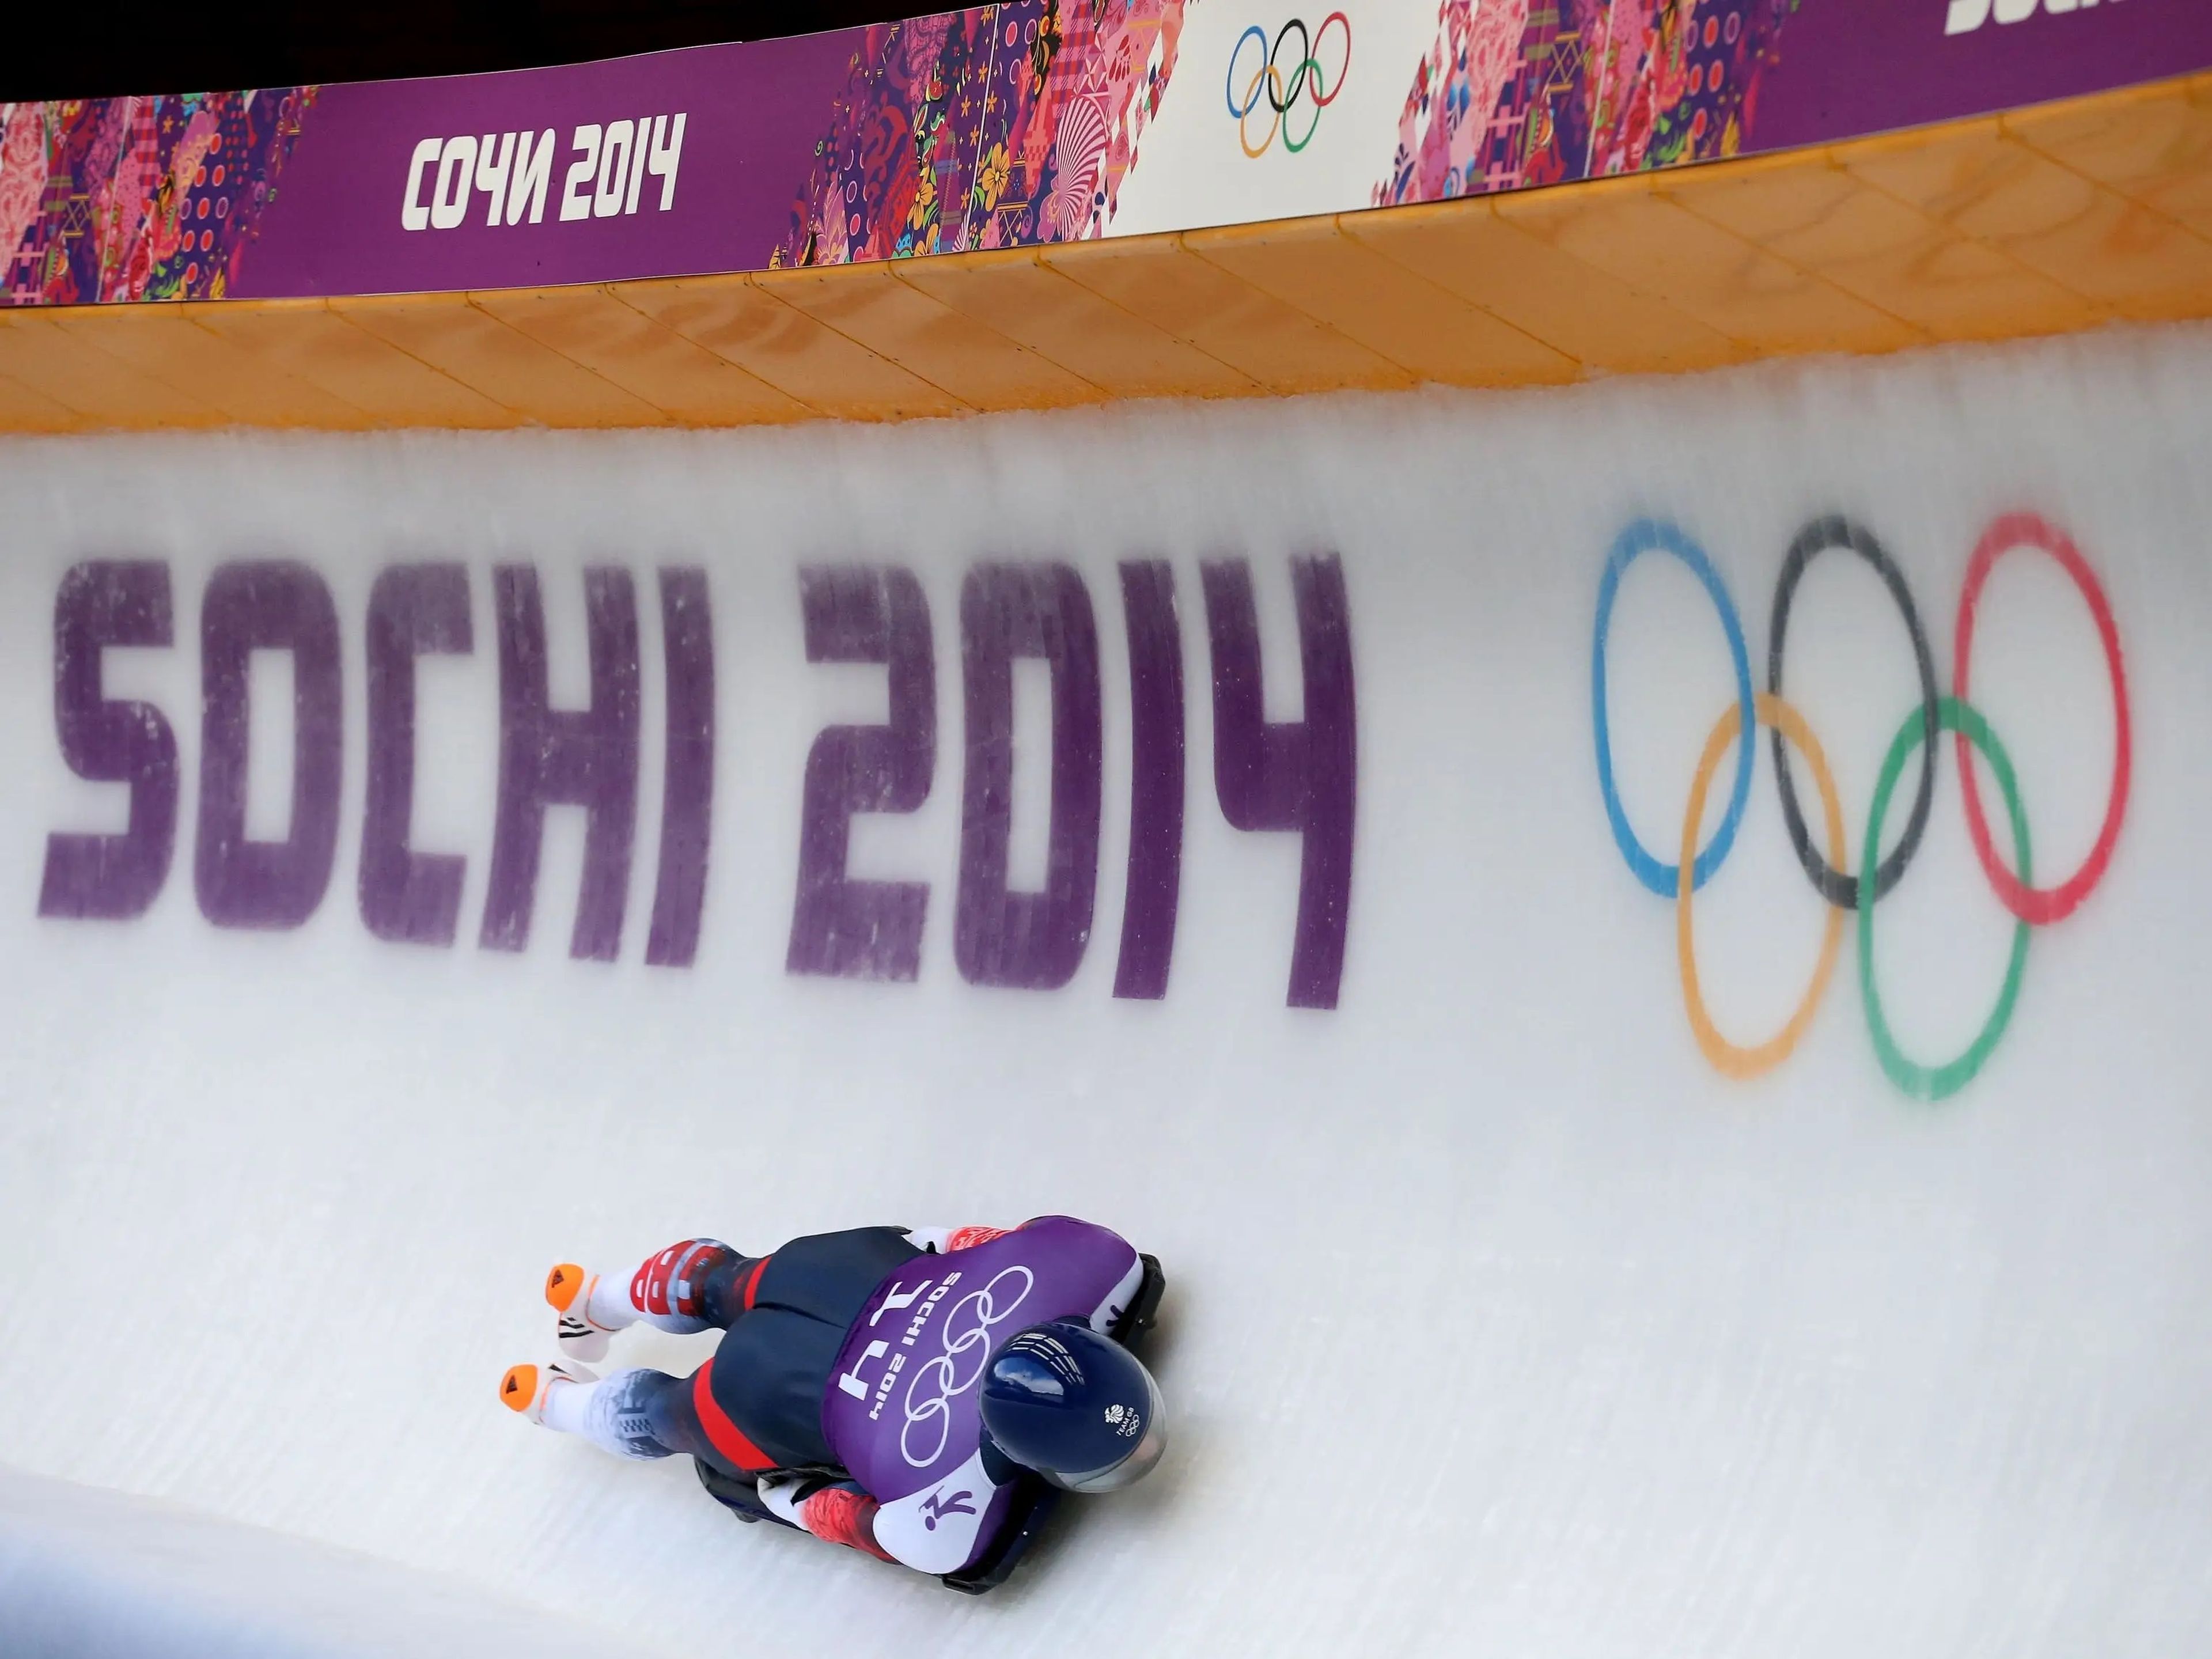 Prueba de los Juegos Olímpicos de Sochi 2014 en Krasnaya Polyana, Rusia.